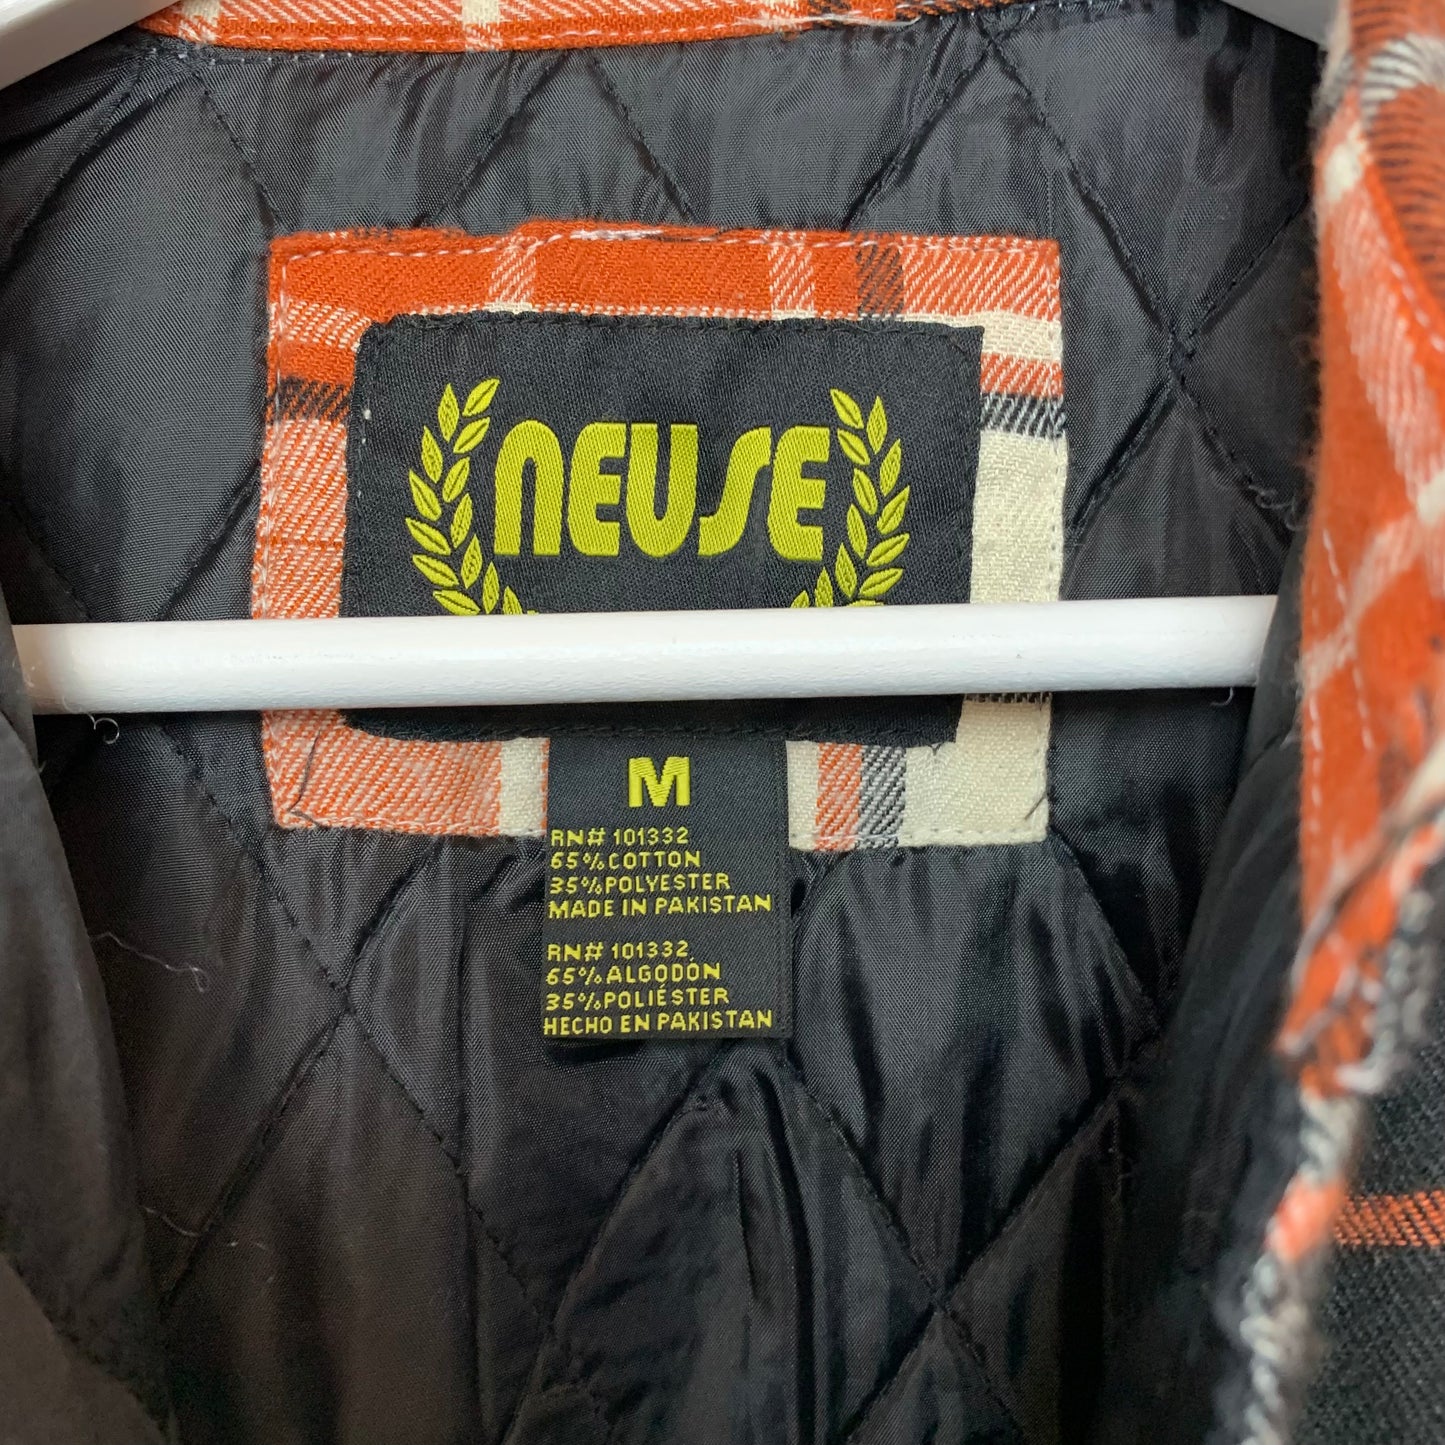 Neuse Orange Plaid Shirt Jacket Shacket Quilted Flannel Medium